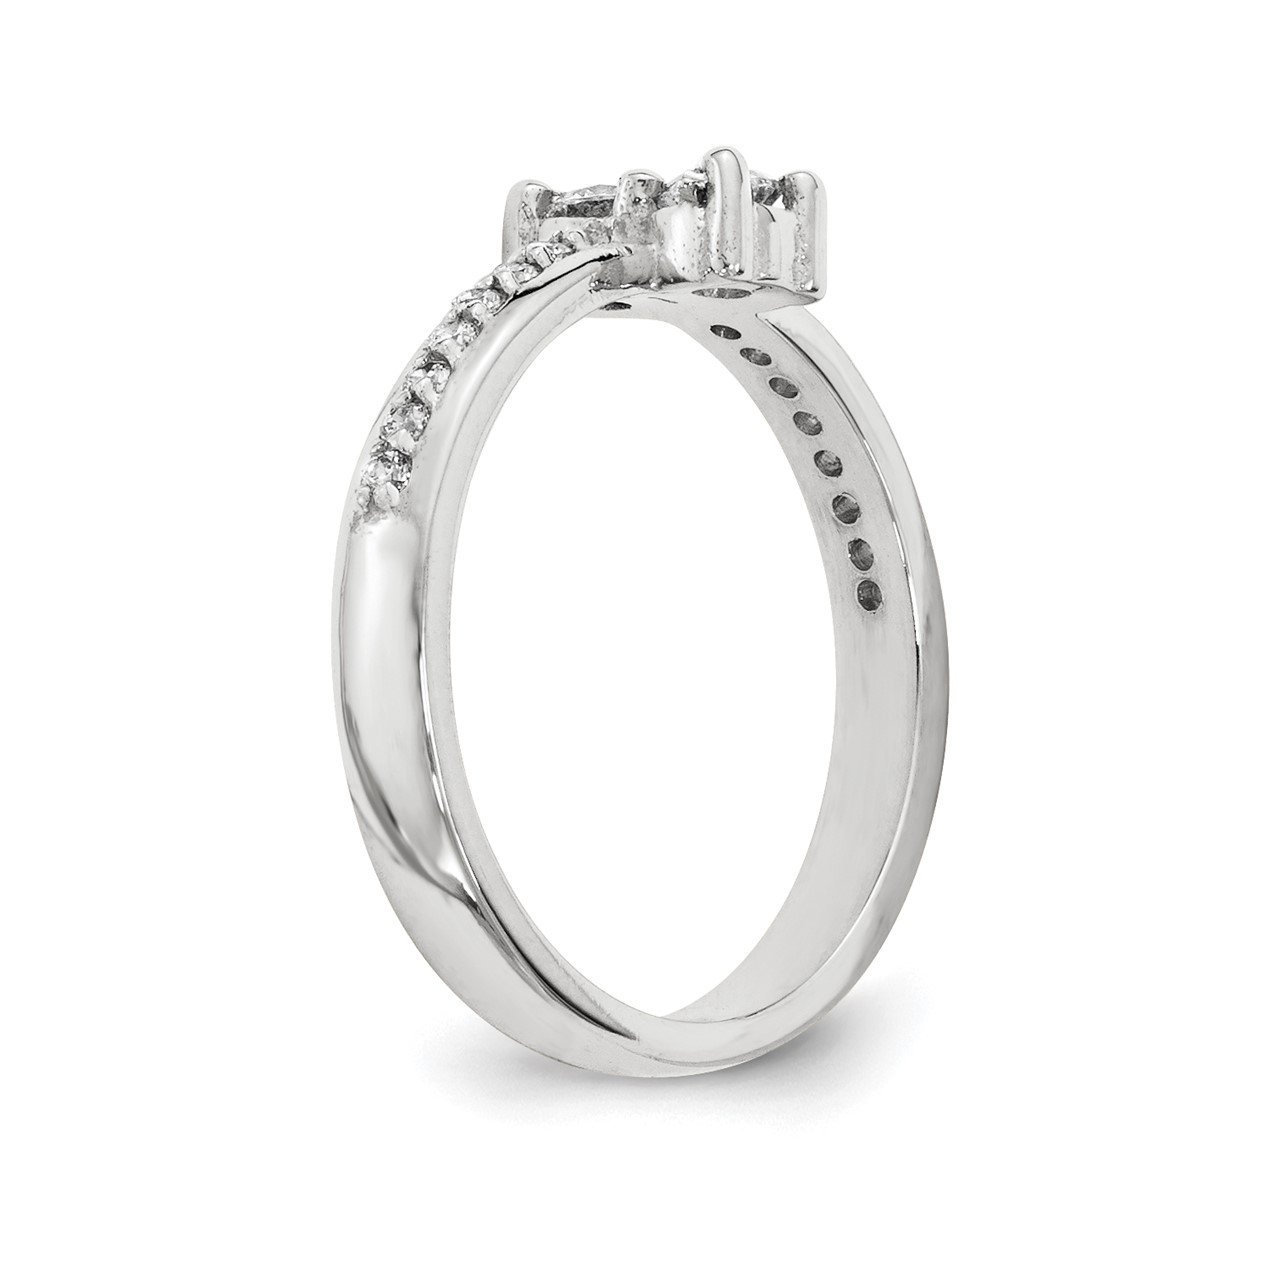 14KW AA Diamond 2-stone Ring Semi-Mount - 3.5 mm center stones-5